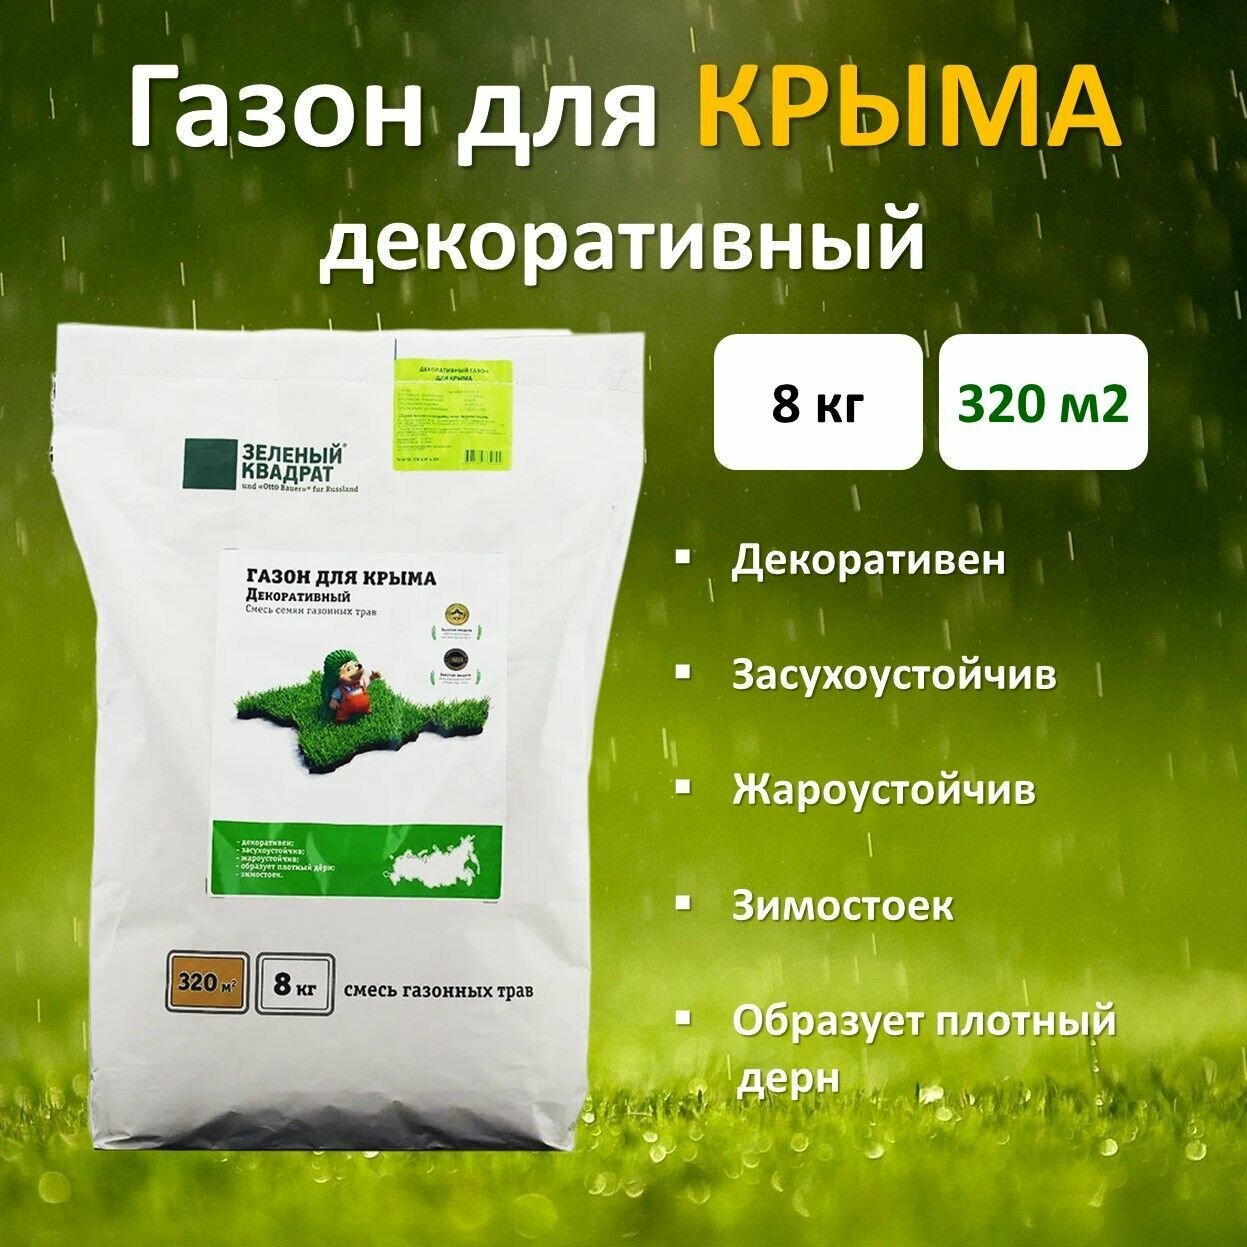 Семена газона Декоративный для Крыма (зеленый квадрат), 8 кг